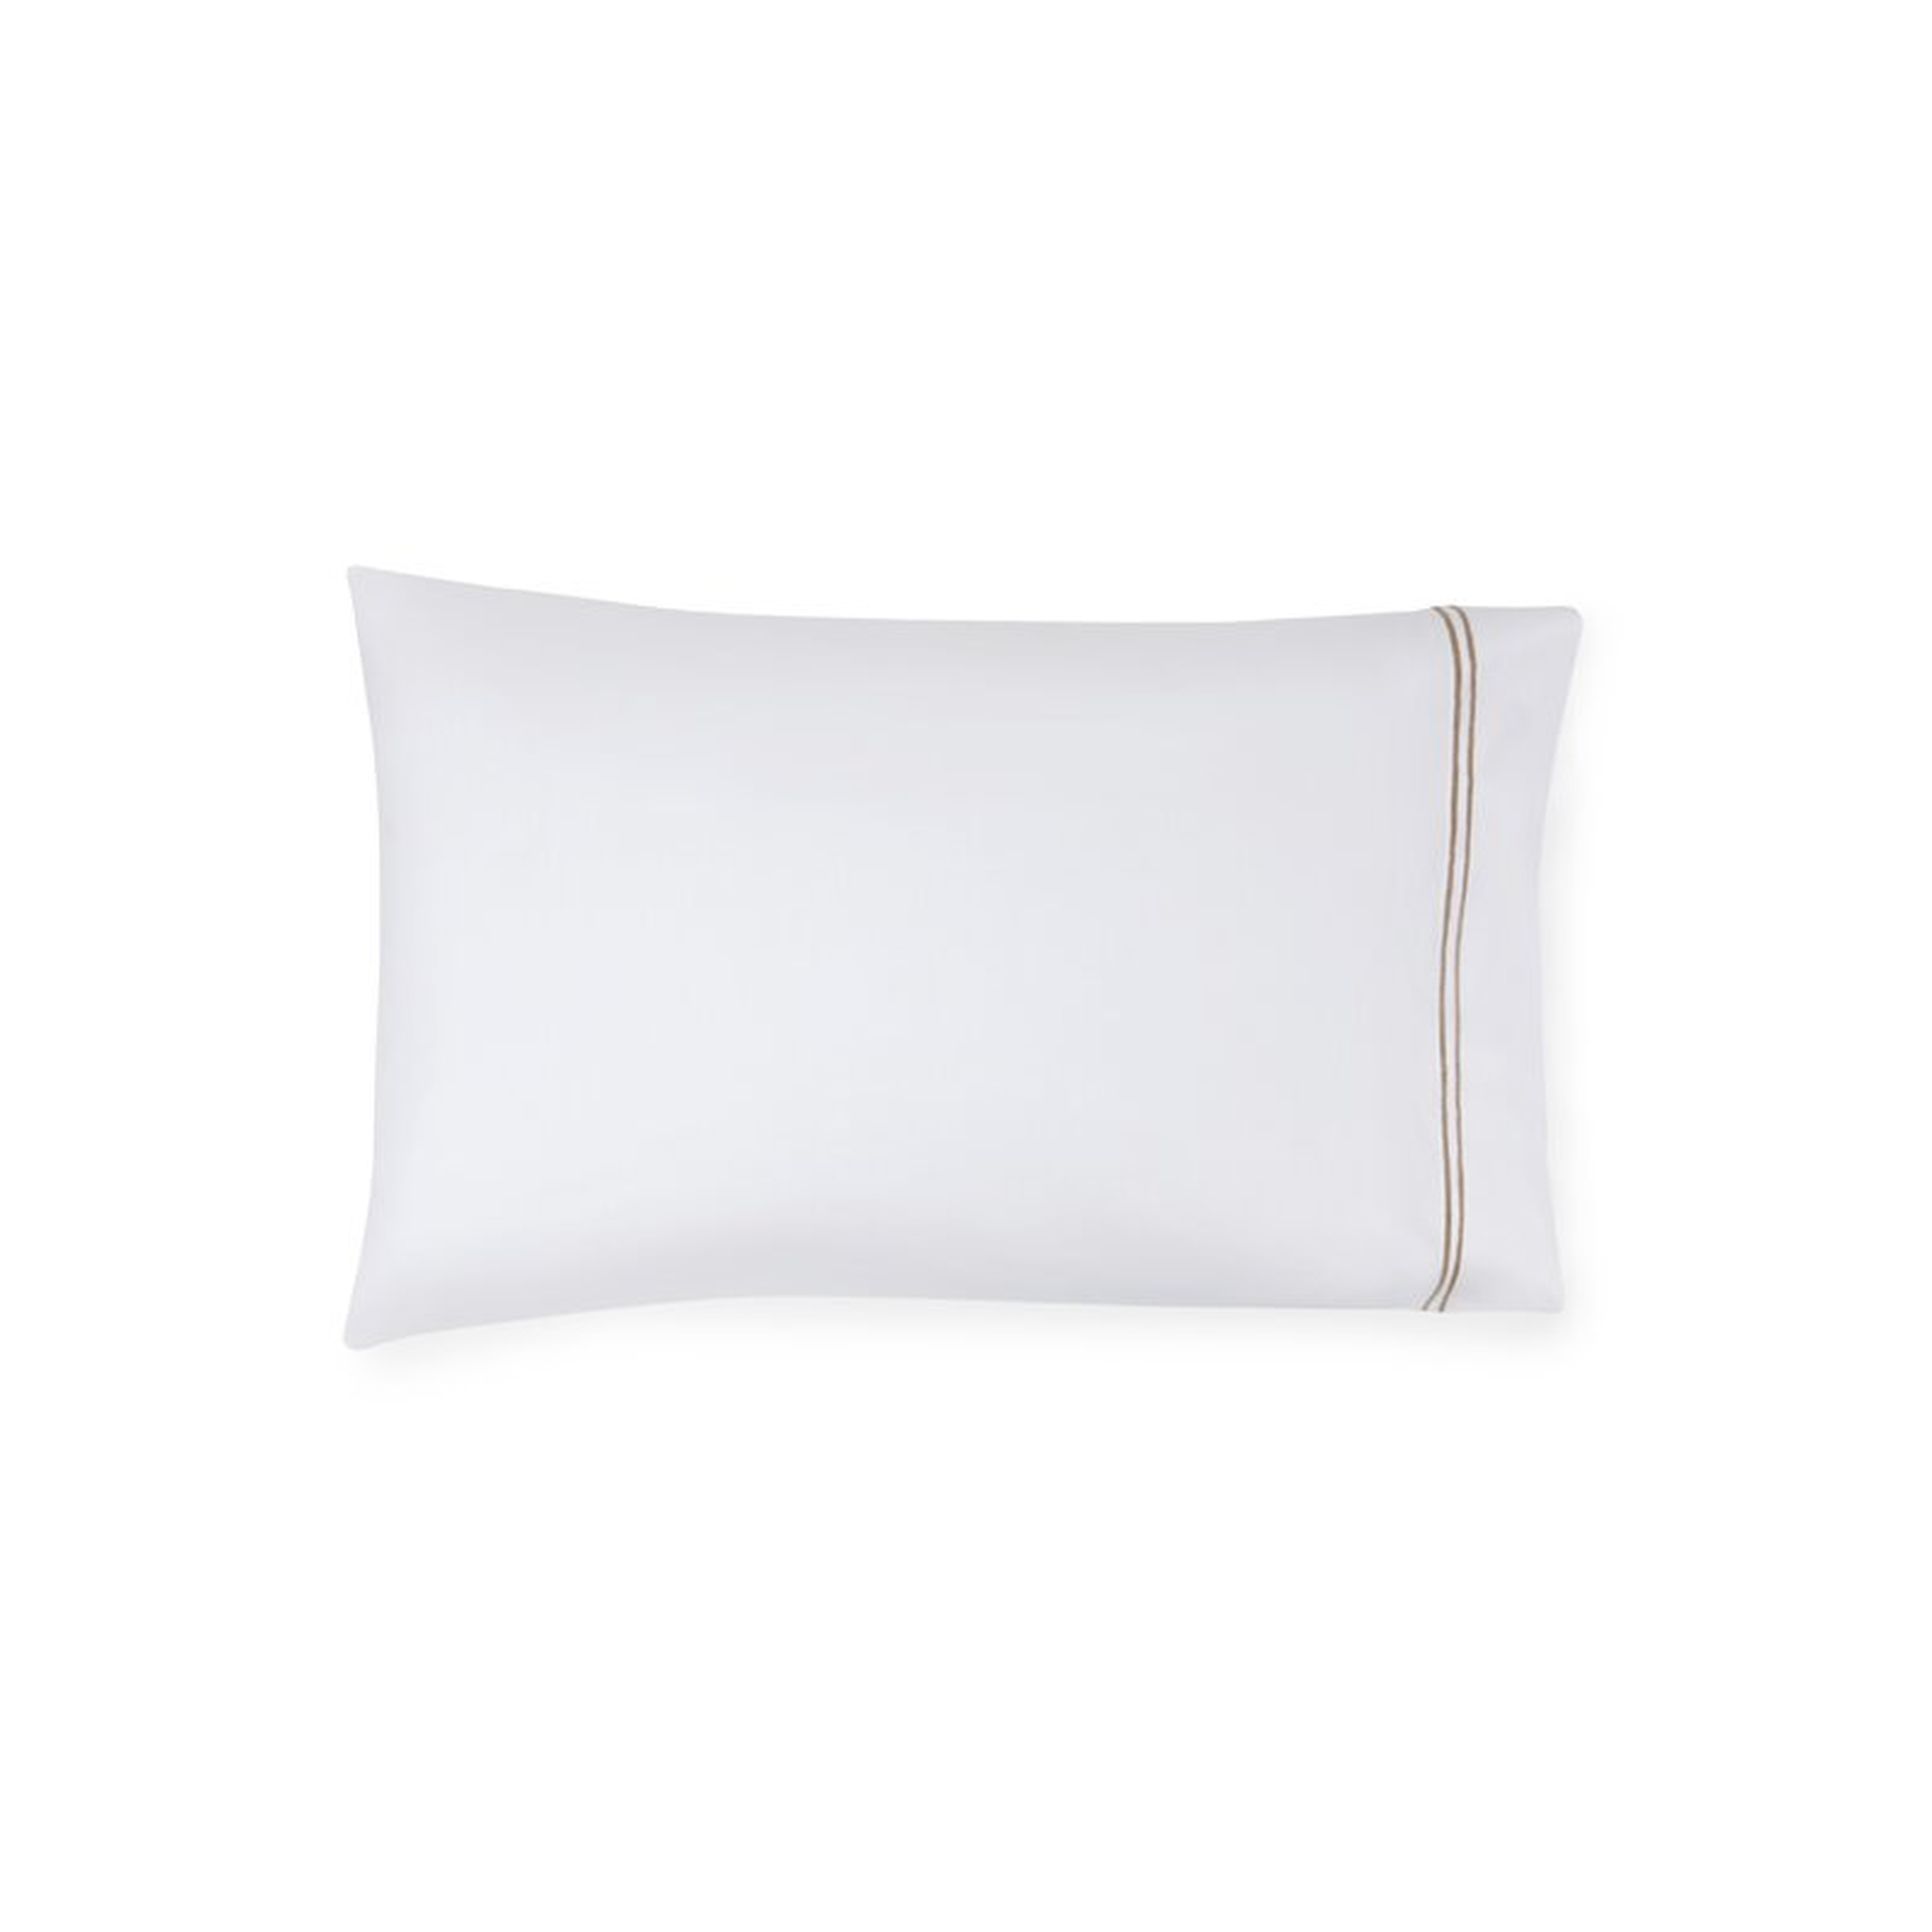 SFERRA Grande Hotel Pillow Case Size: Standard, Color: White/Taupe - Perigold